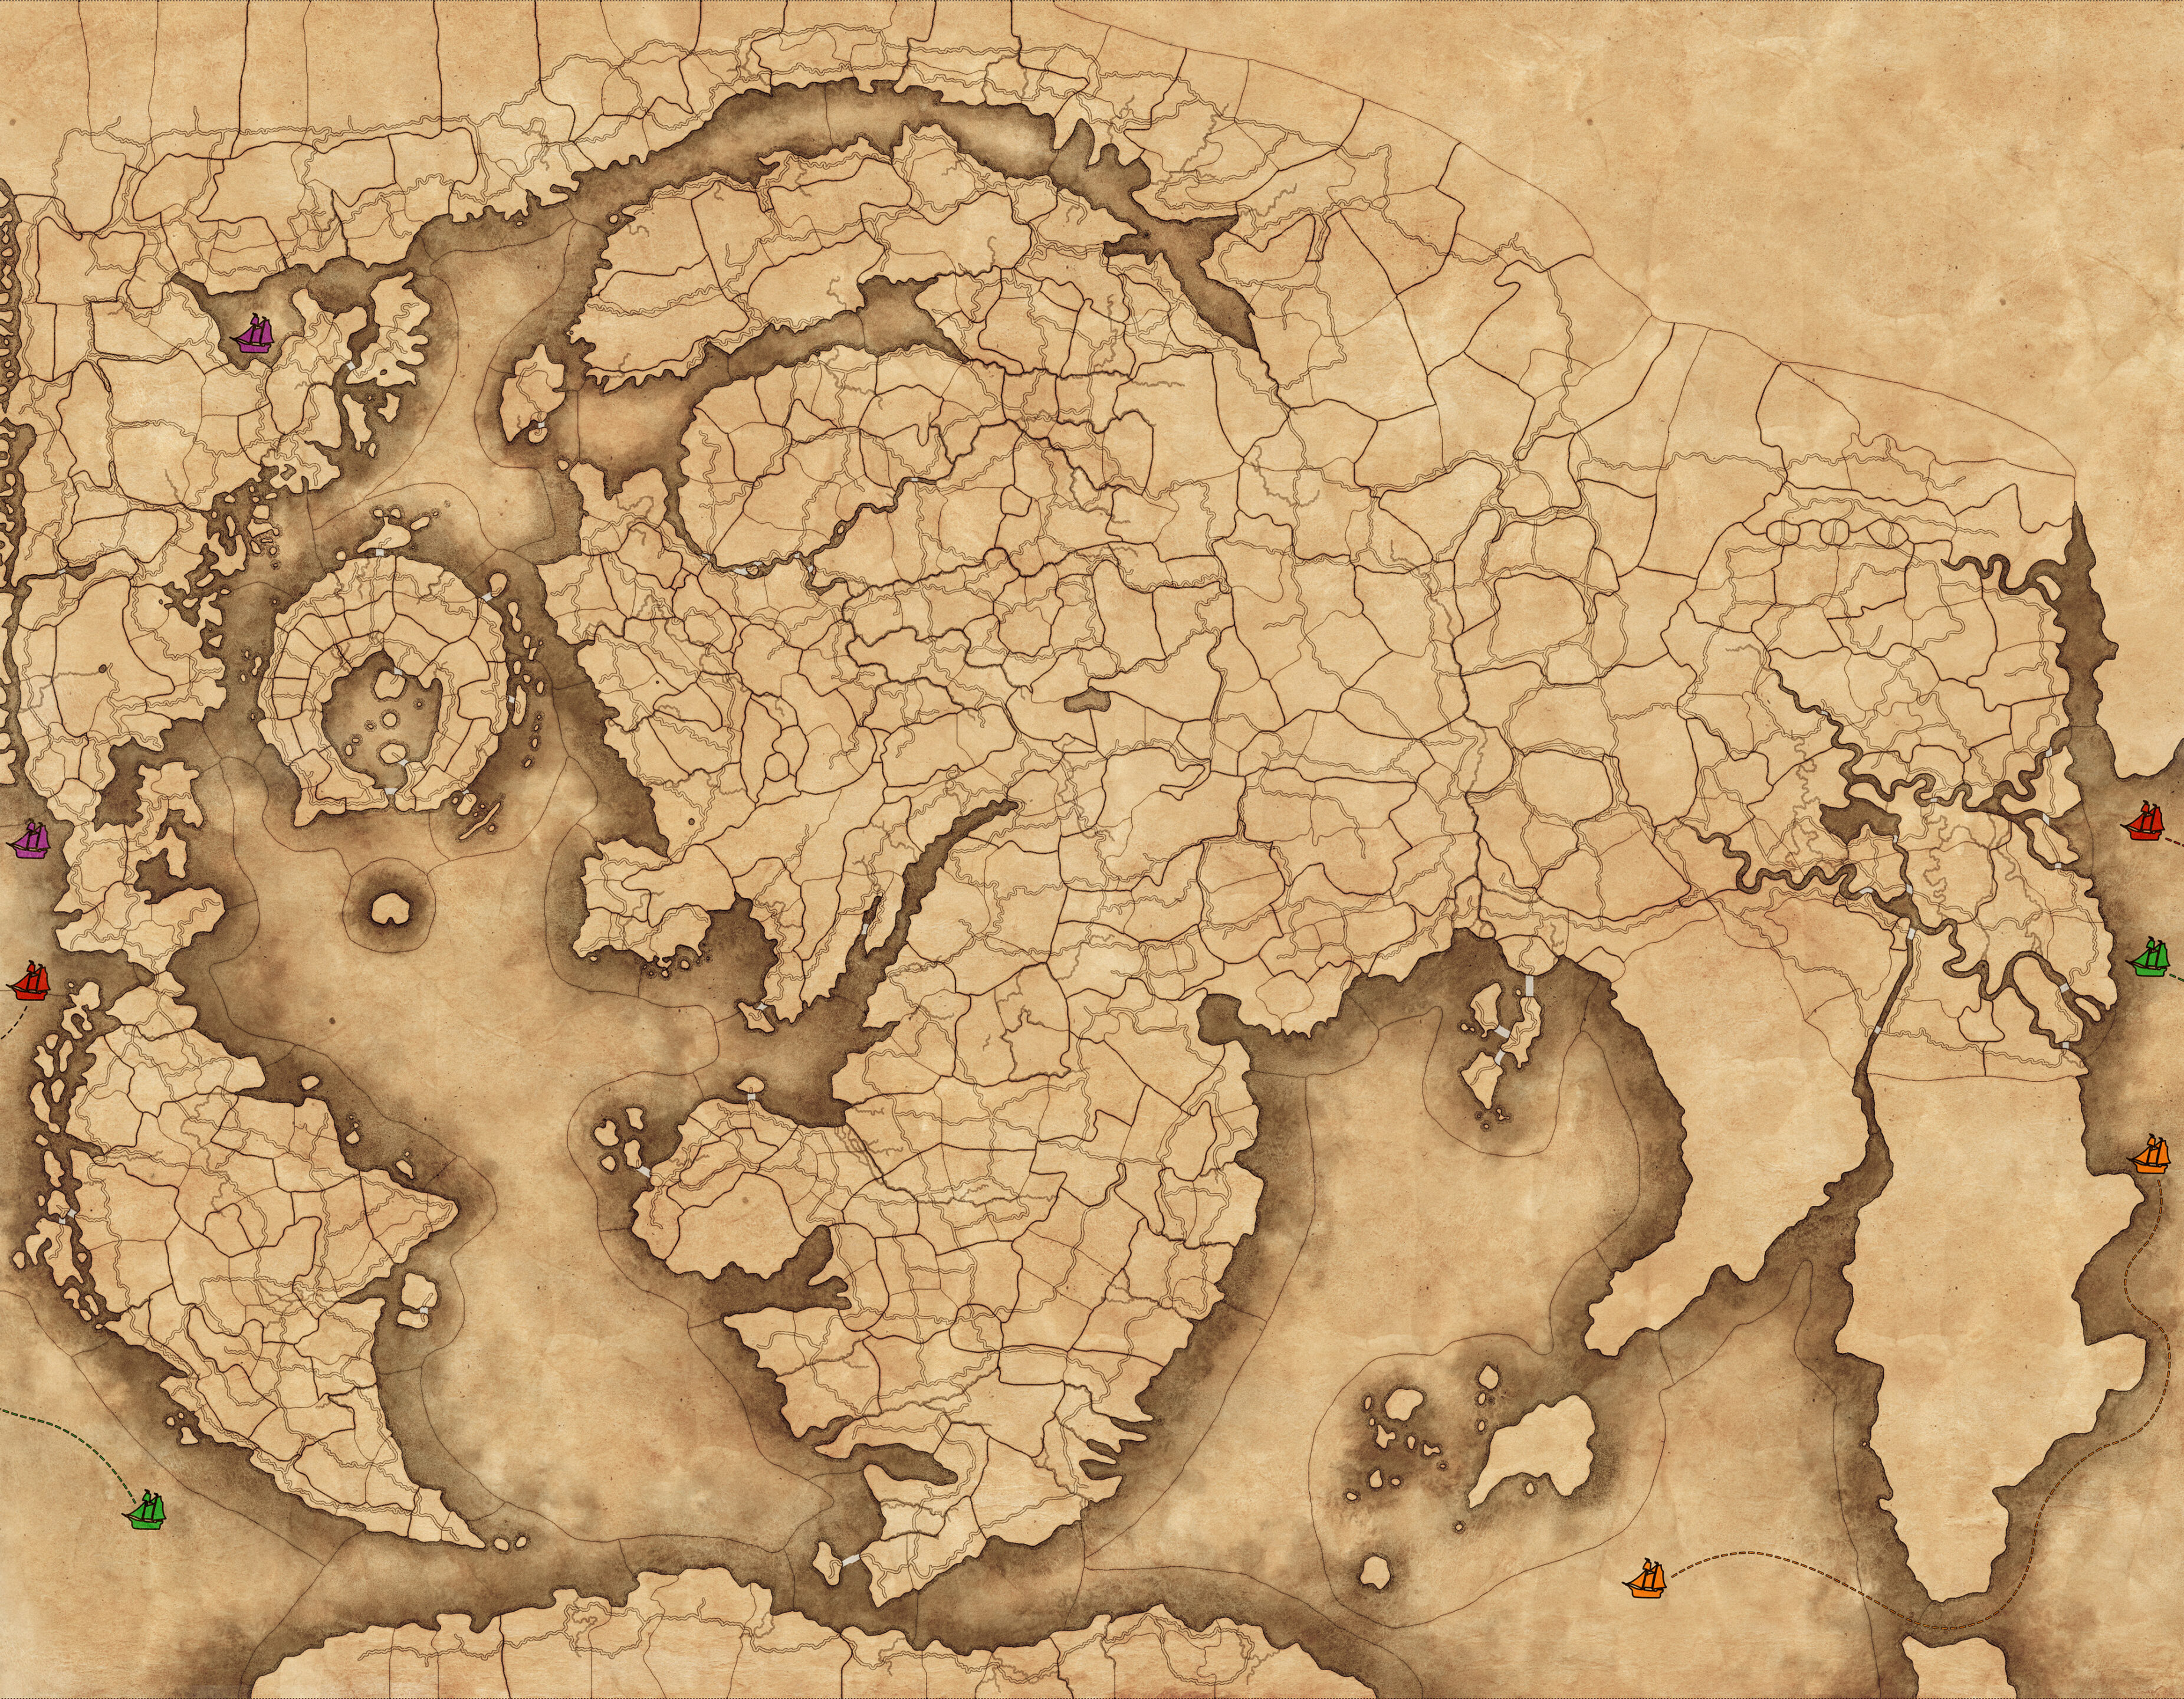 תמונה של מפת מצב המשחק של אימפריות אלמותיות, כולל סמלי סירות צבעוניים המייצגים את נתיבי הים שניתן להשתמש בהם כדי לחצות מרחקים גדולים של העולם